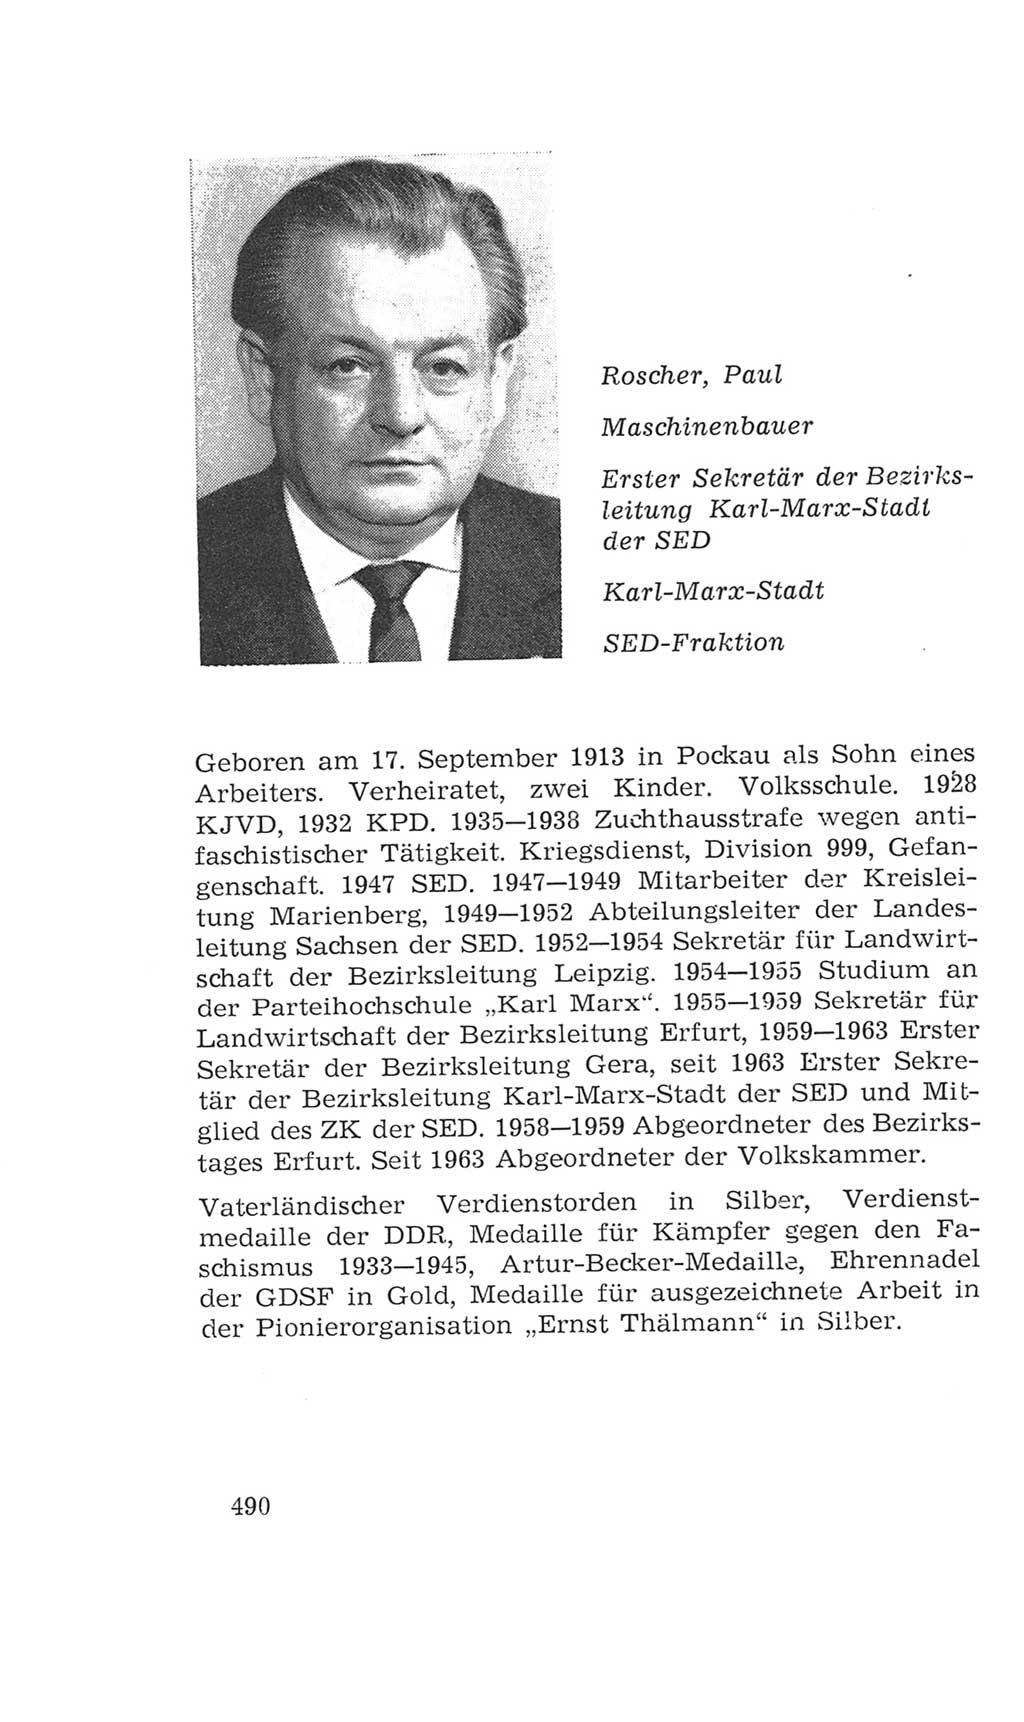 Volkskammer (VK) der Deutschen Demokratischen Republik (DDR), 4. Wahlperiode 1963-1967, Seite 490 (VK. DDR 4. WP. 1963-1967, S. 490)